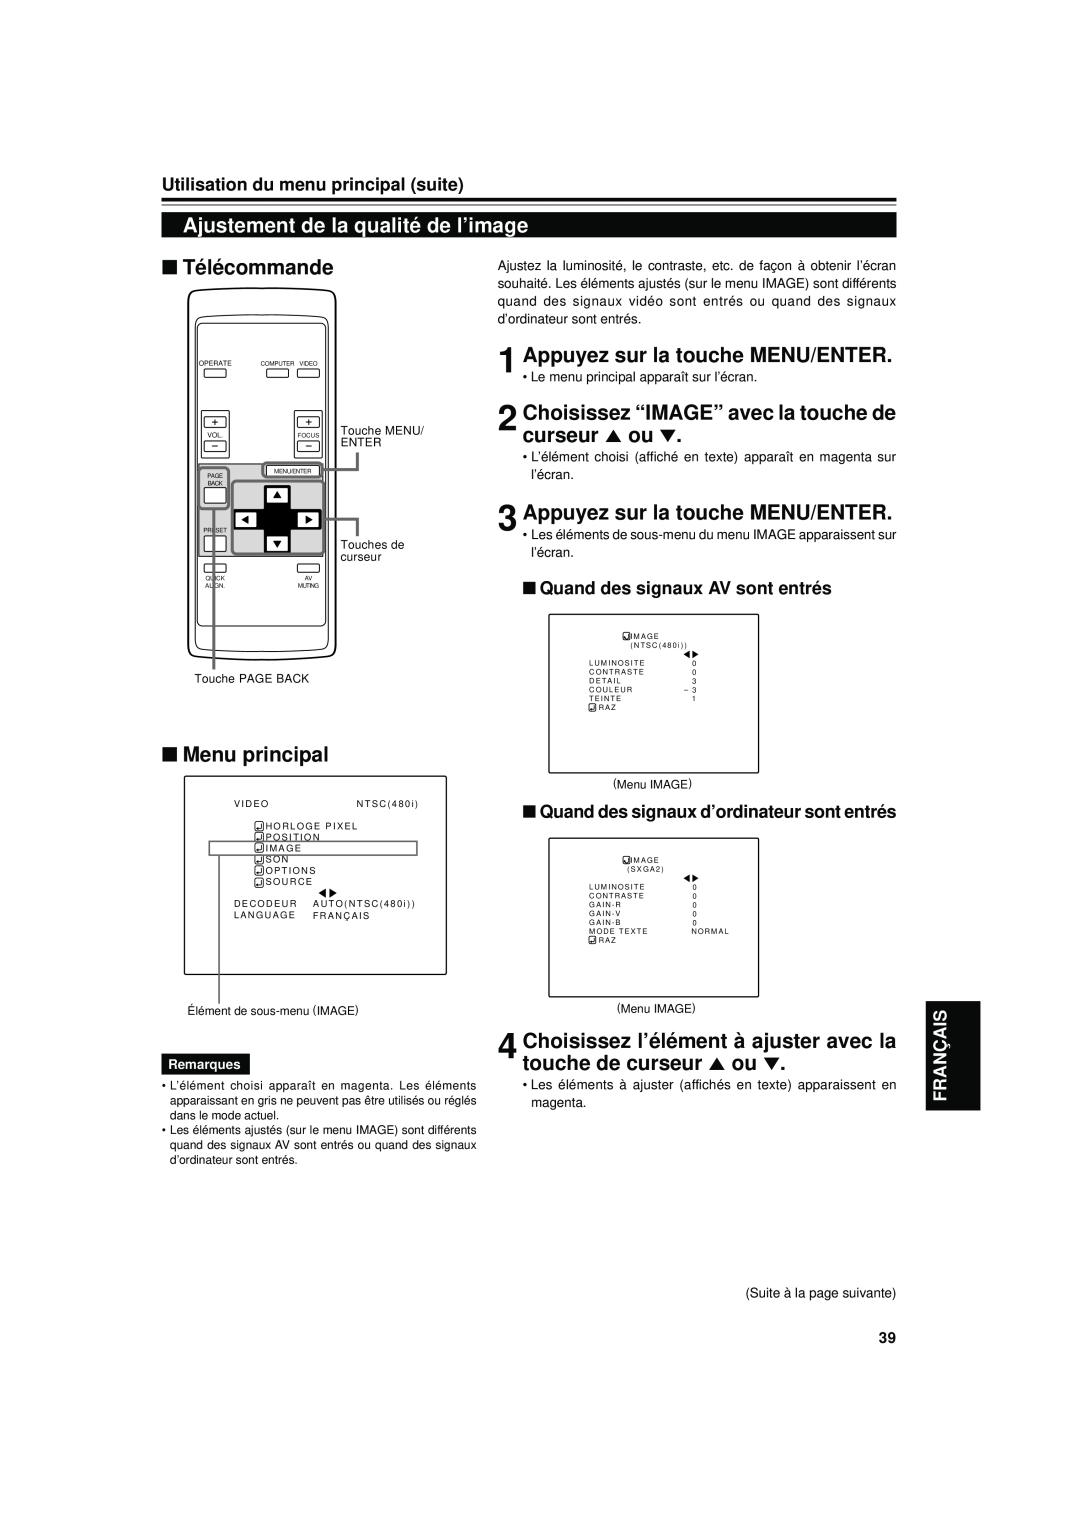 JVC DLA-S15U manual Ajustement de la qualité de l’image, Choisissez “IMAGE” avec la touche de curseur 5 ou, Télécommande 